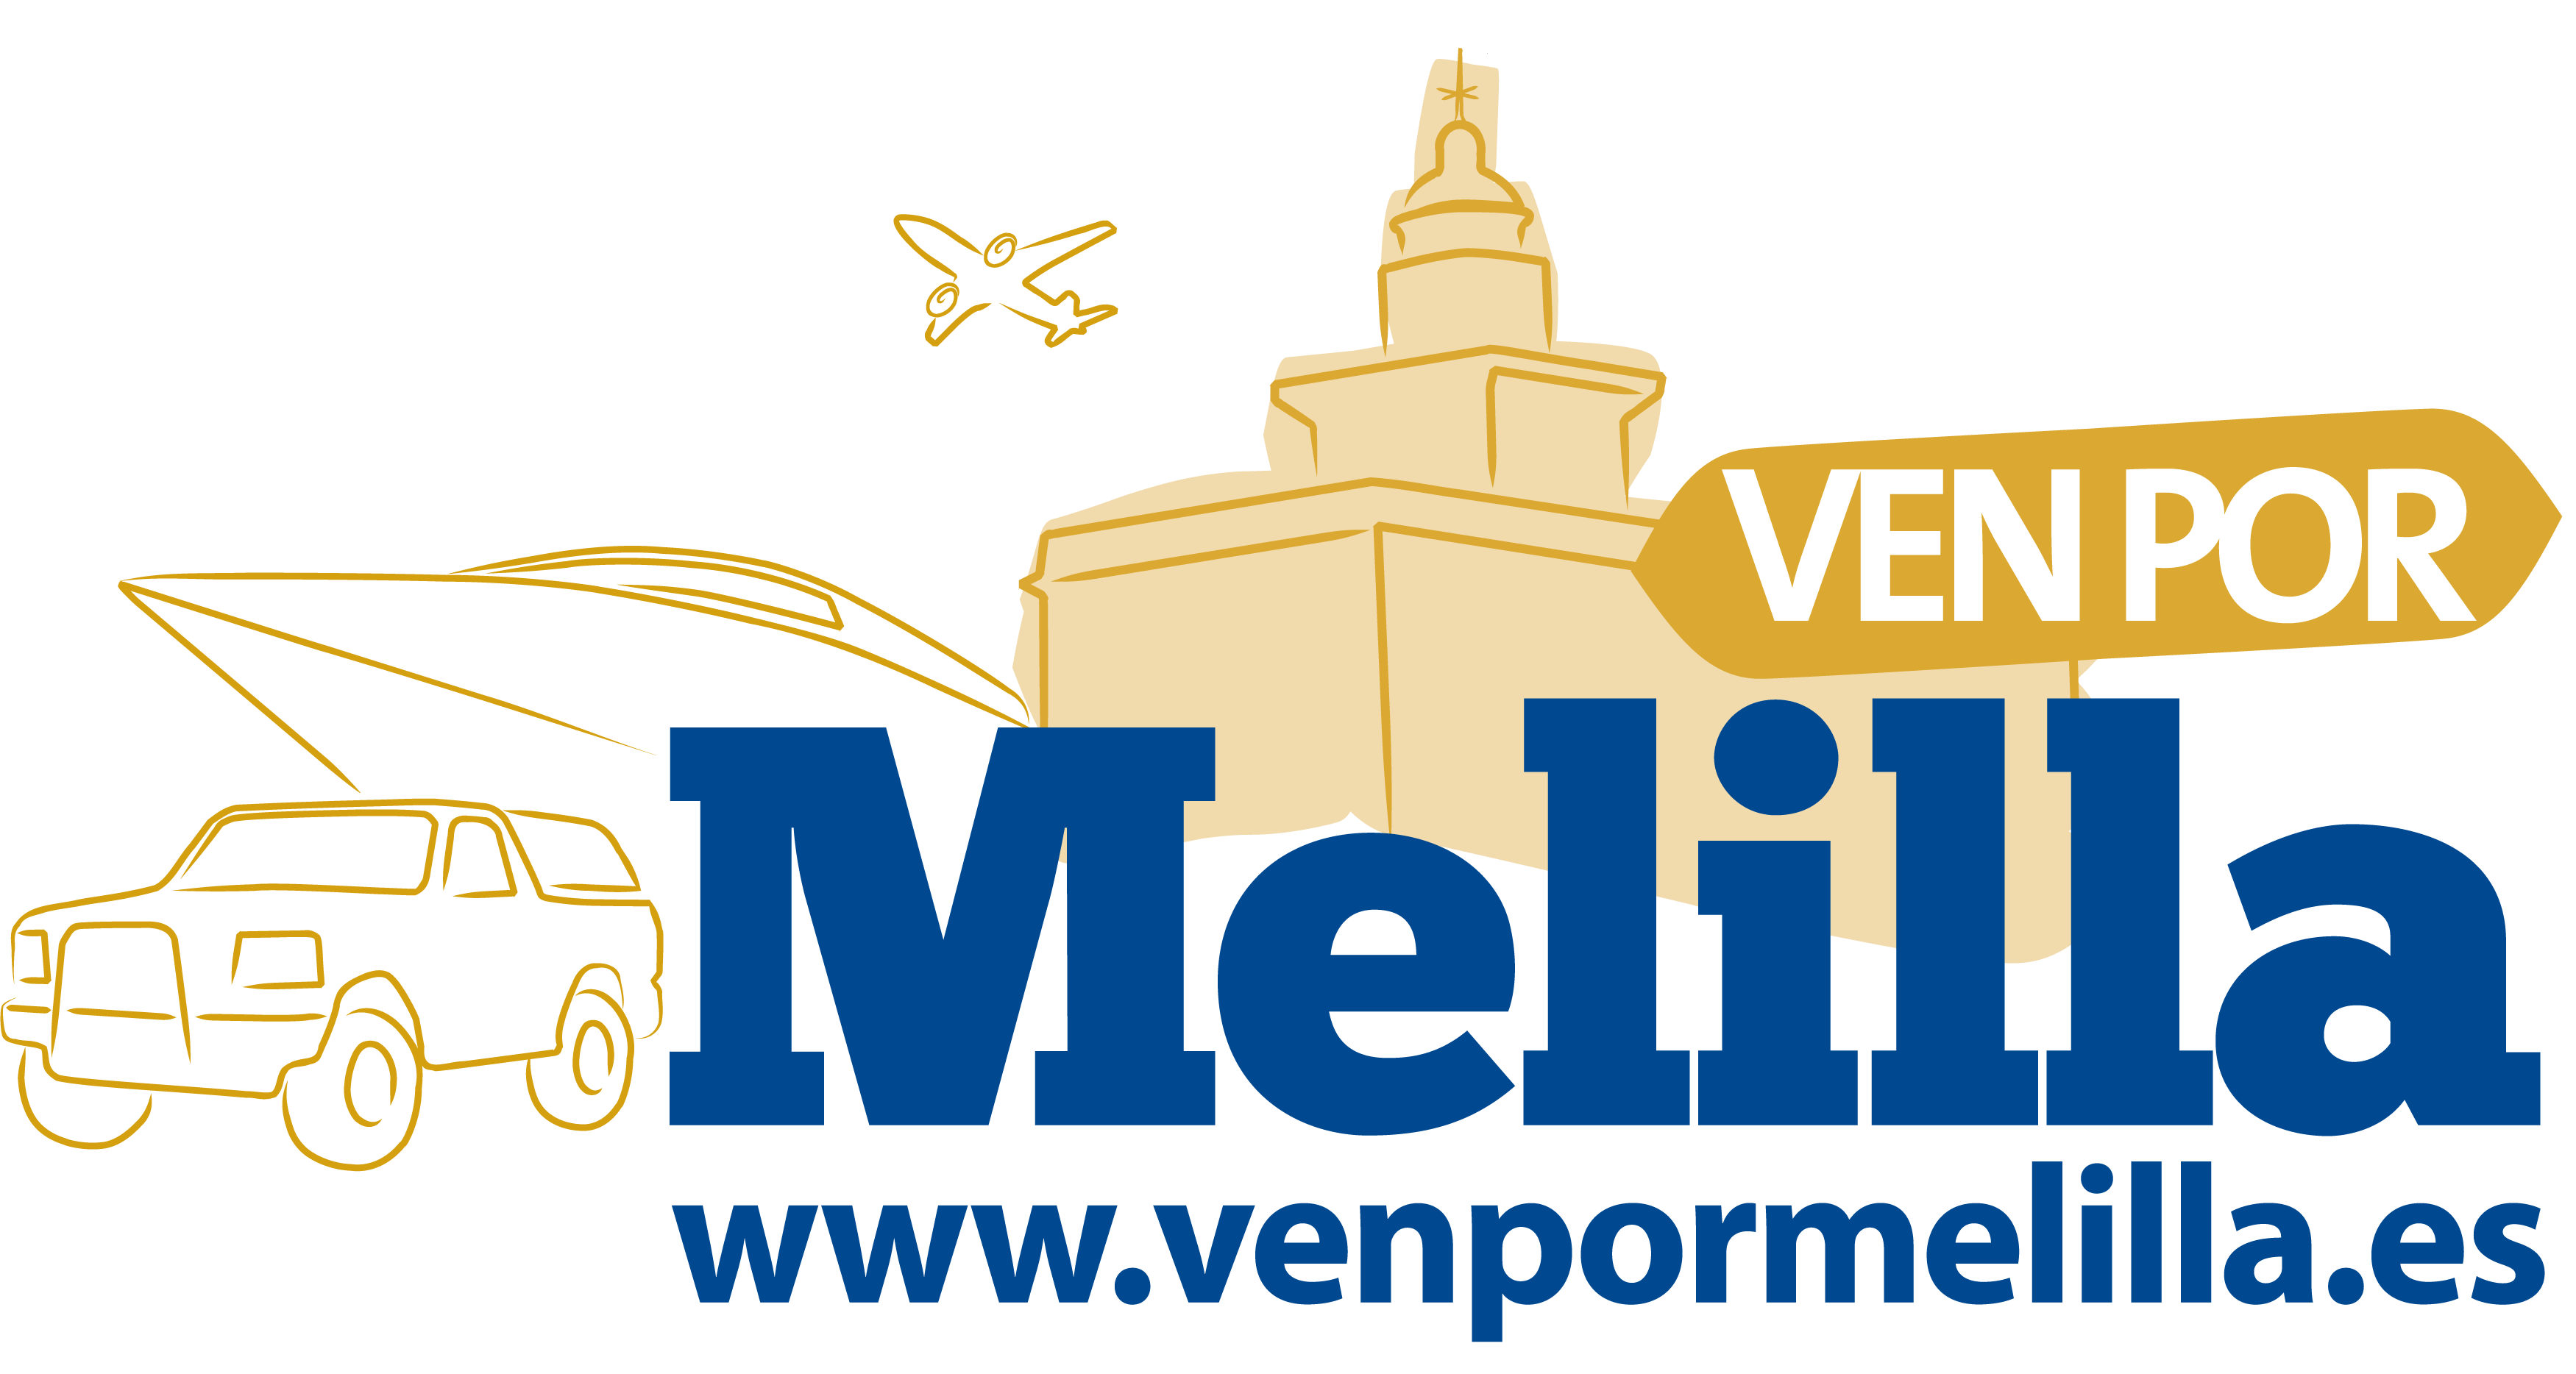 ven_por_melilla_logo